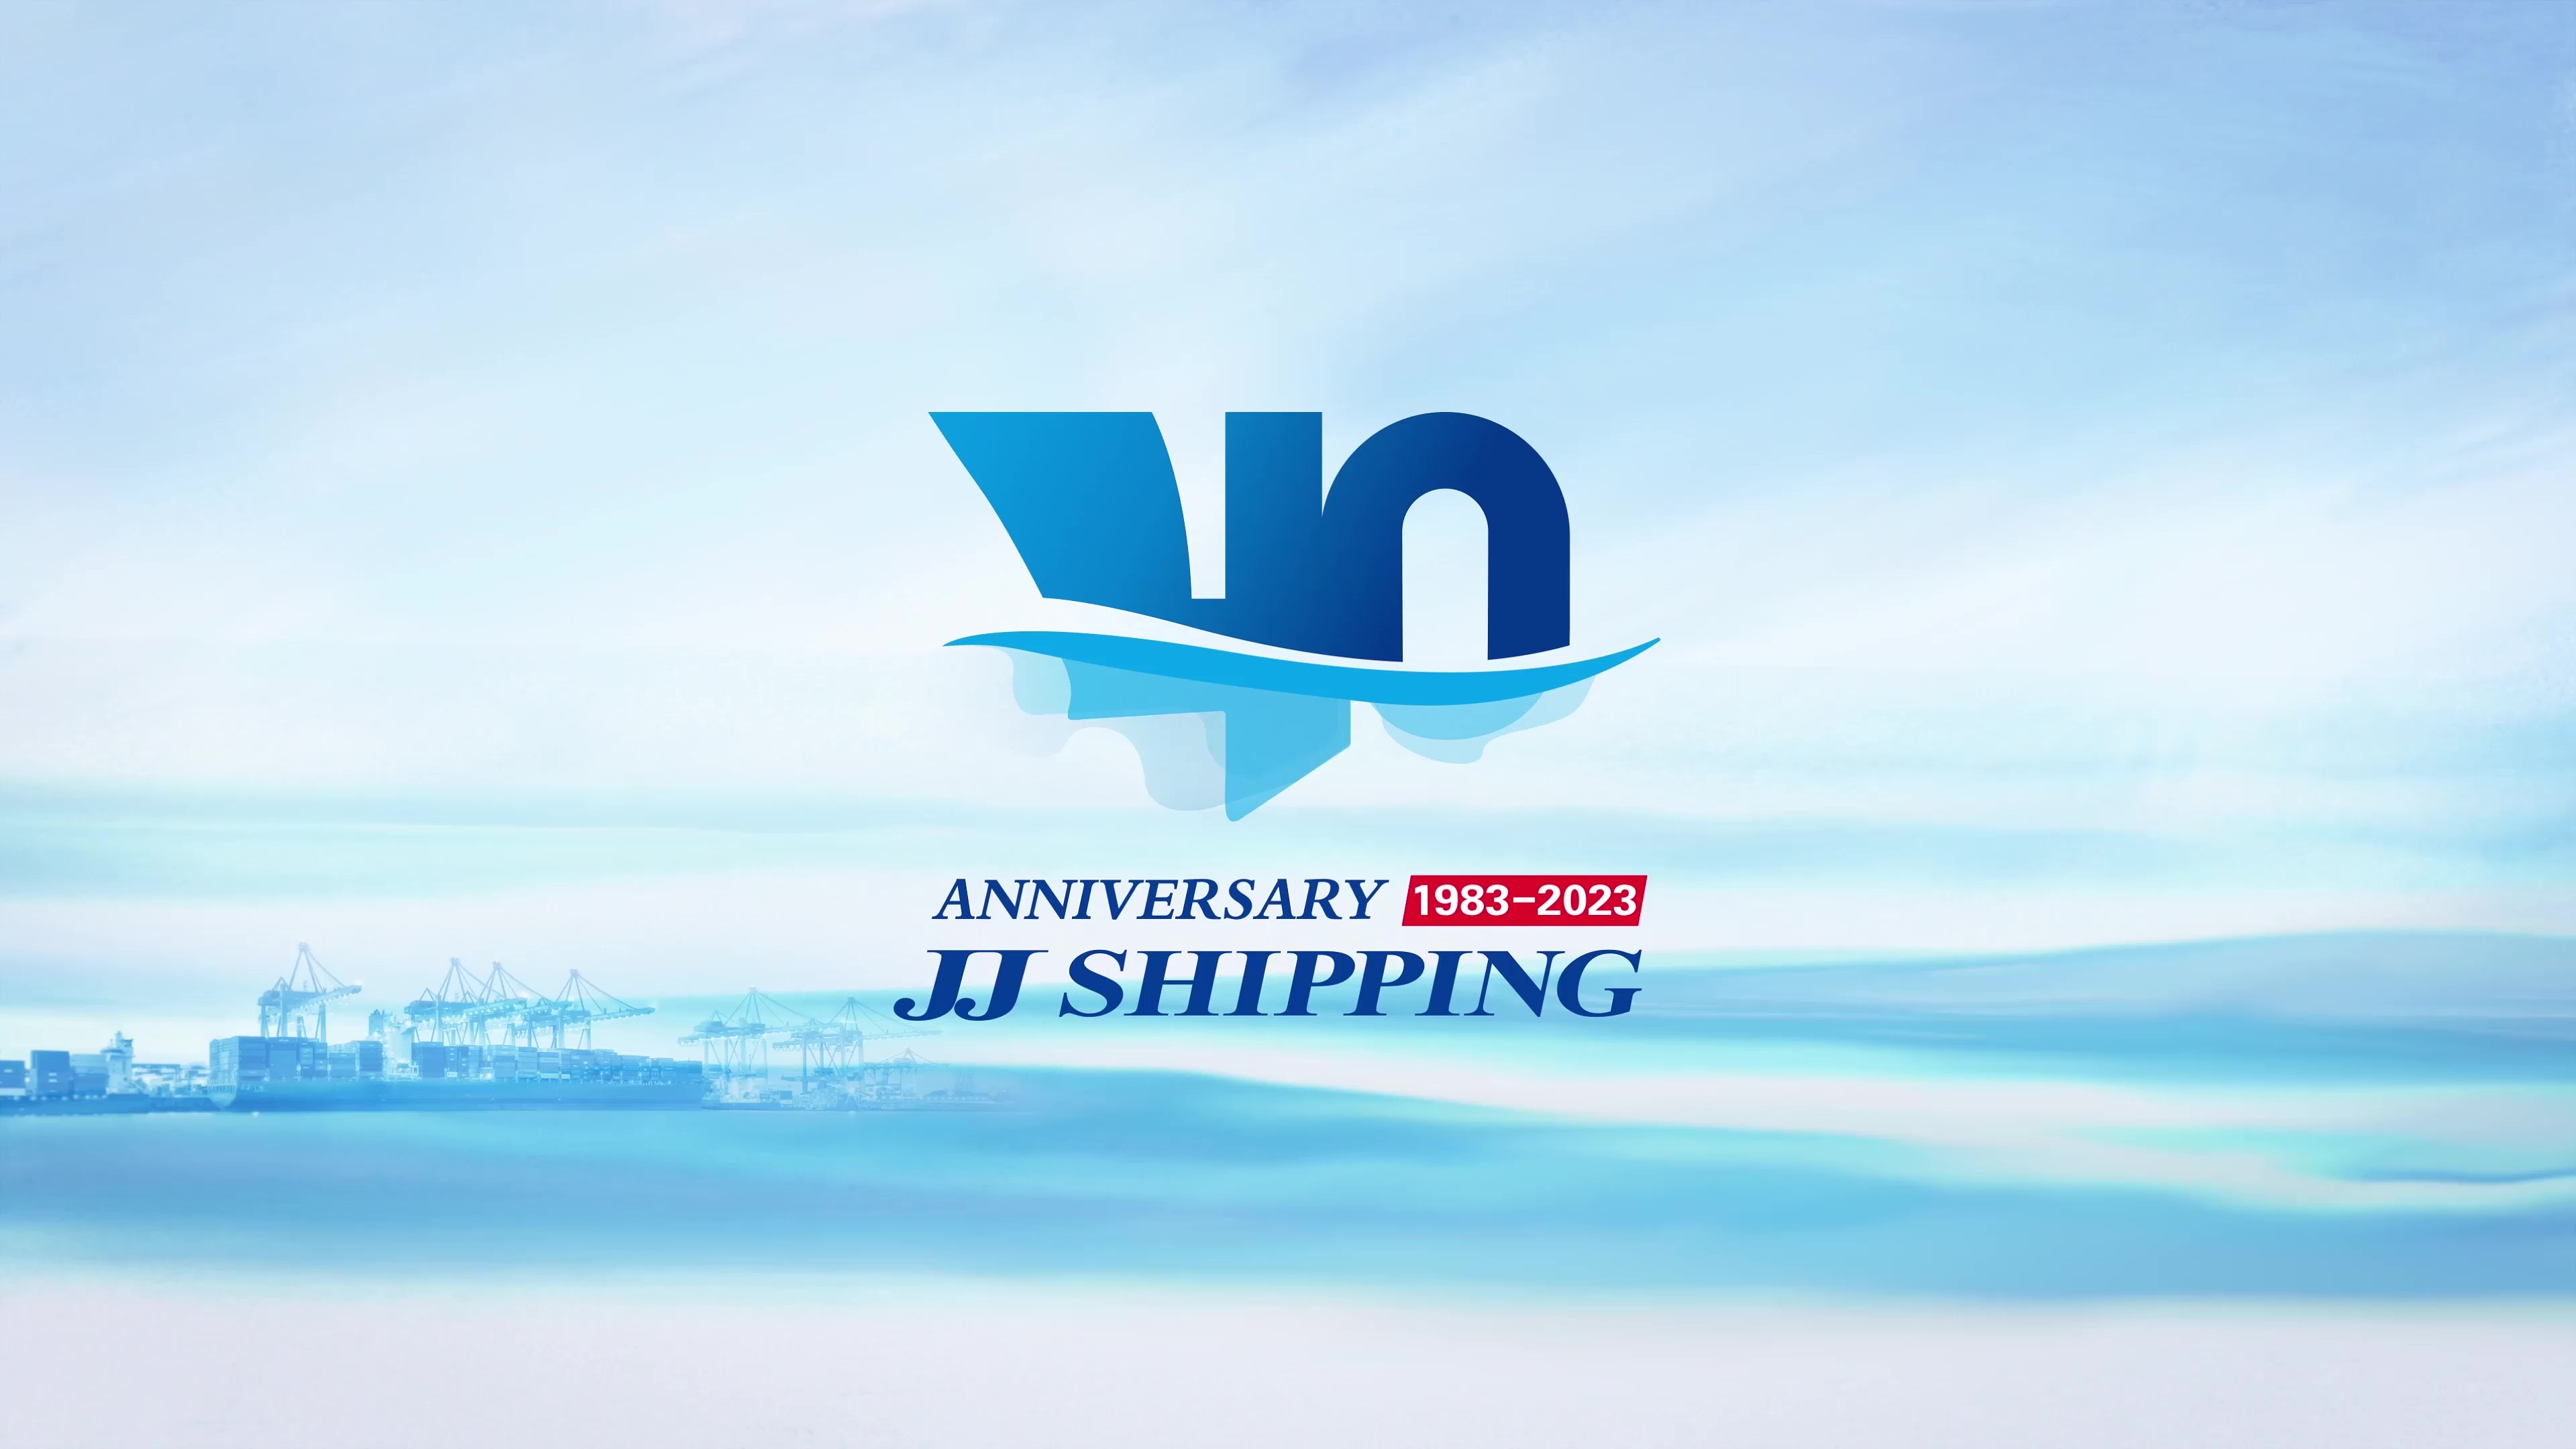 JINJIANG SHIPPING 40 ANNIVERSARY